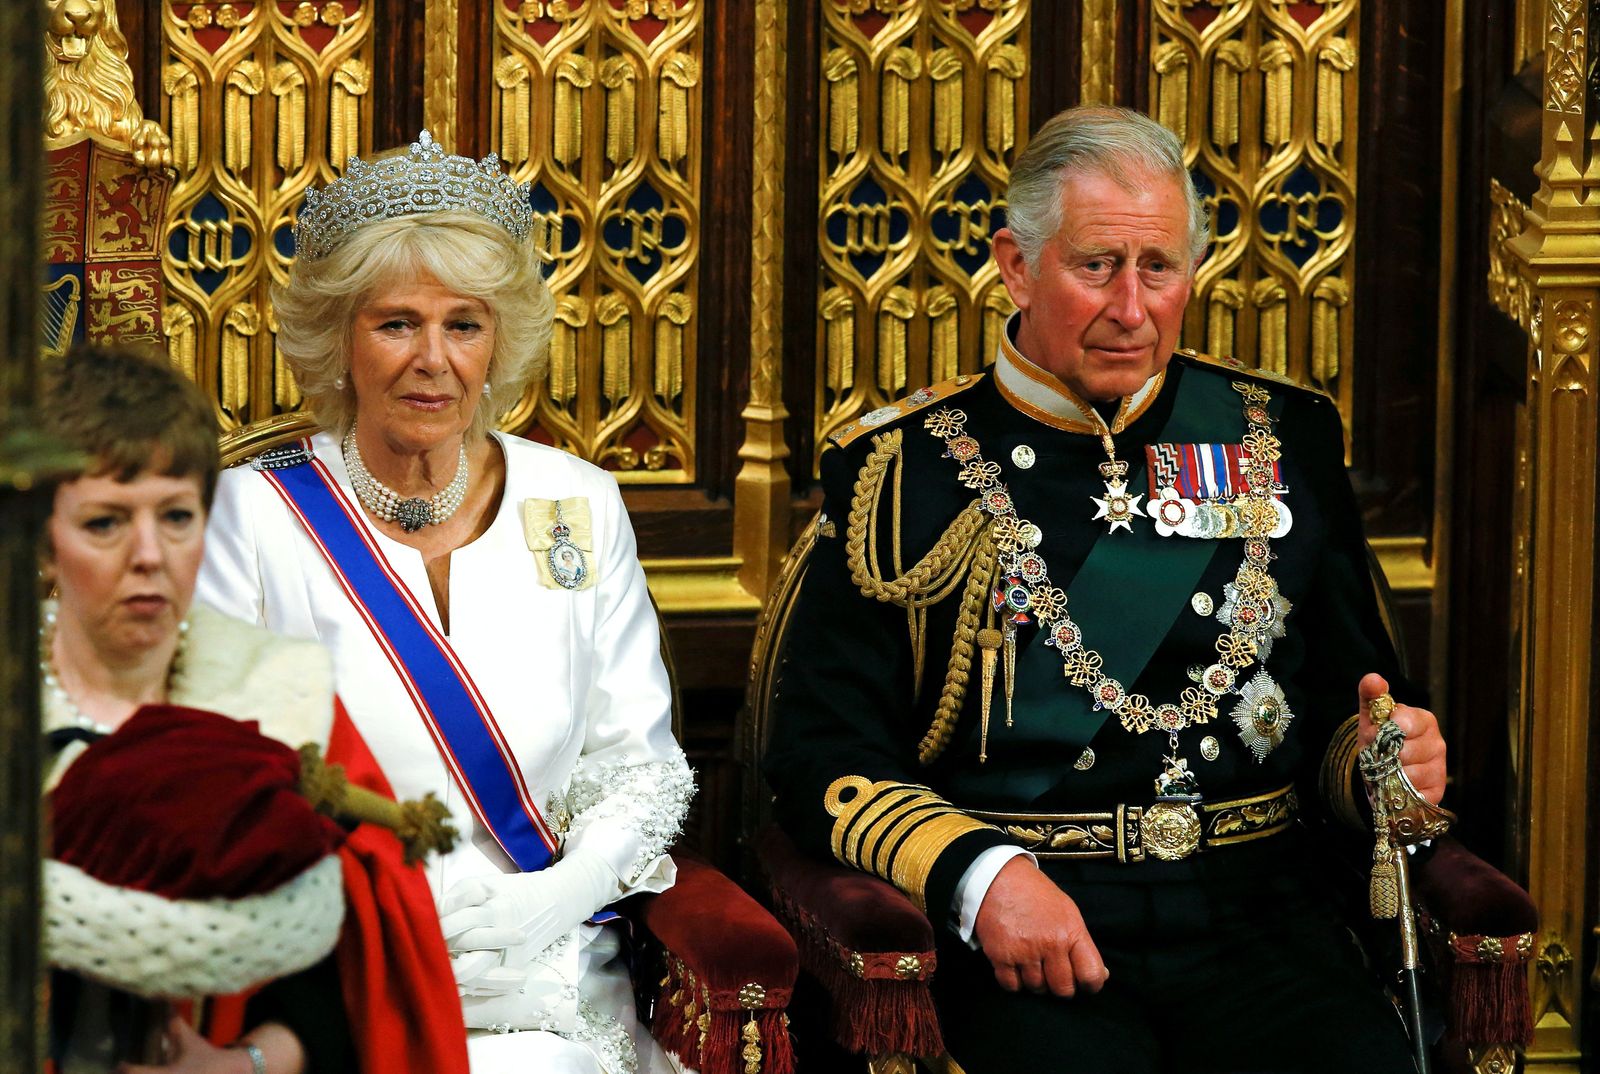 الأمير تشارلز وزوجته كاميلا دوقة كورنوال ينتظران الملكة إليزابيث لإلقاء خطابها في مجلس اللوردات، خلال الافتتاح الرسمي للبرلمان في قصر وستمنستر في لندن، بريطانيا- 27 مايو 2015. - REUTERS